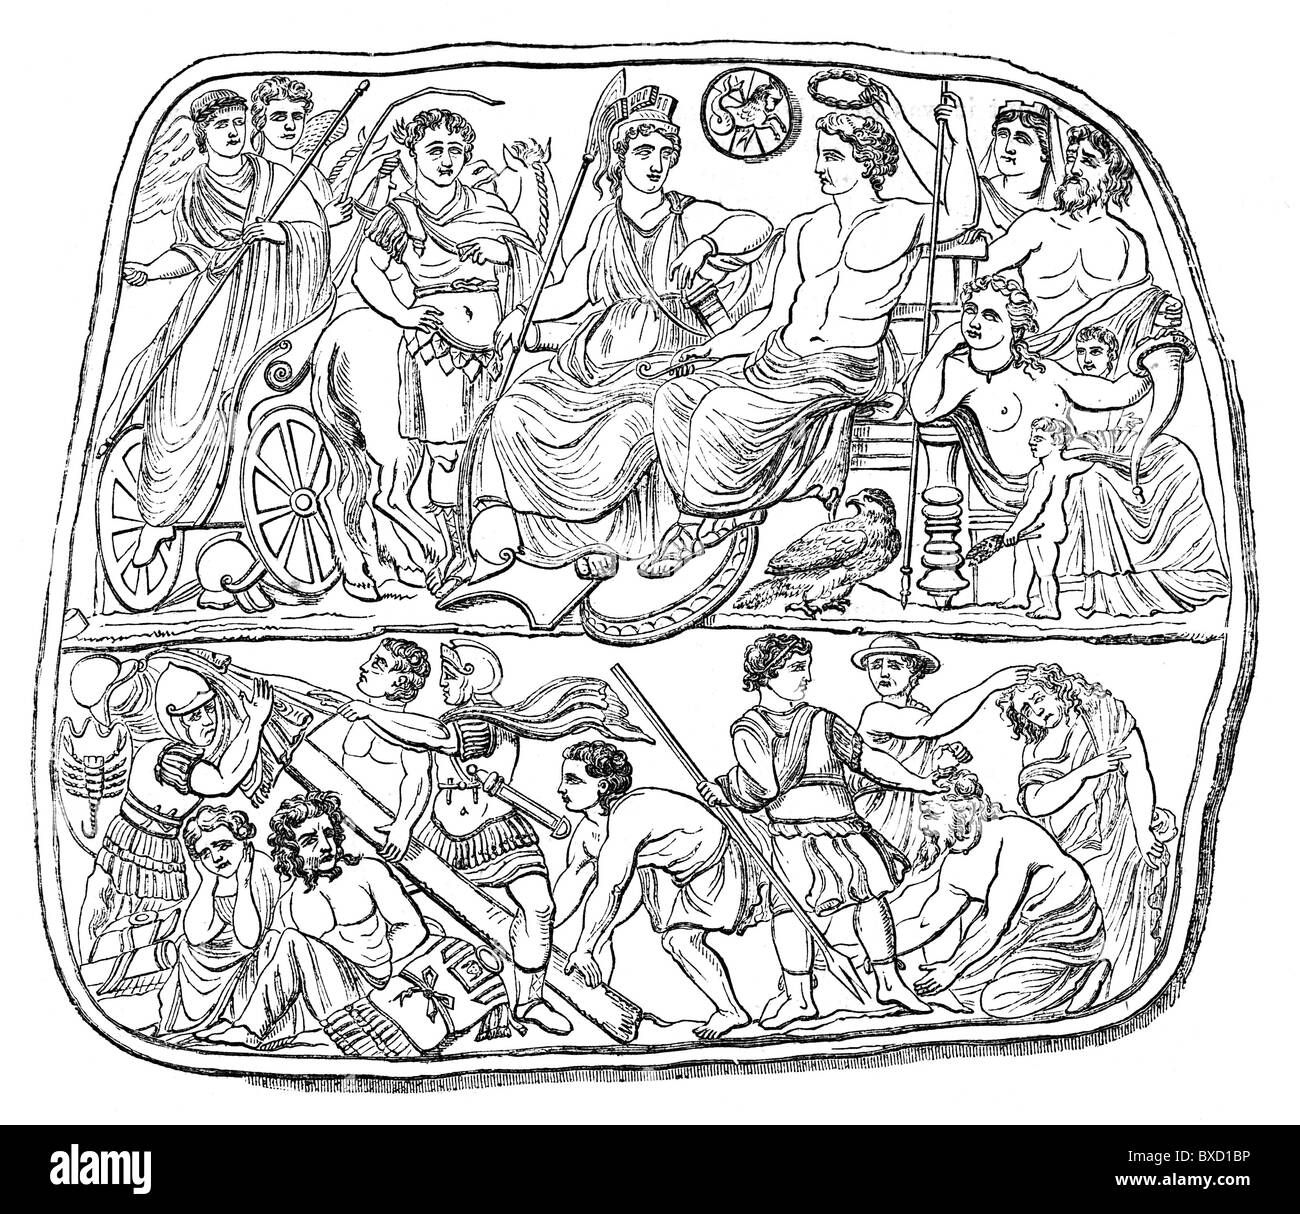 Dibujo de líneas; La apoteosis del emperador romano Augusto, desde el cameo de Viena; ilustración en blanco y negro. Foto de stock